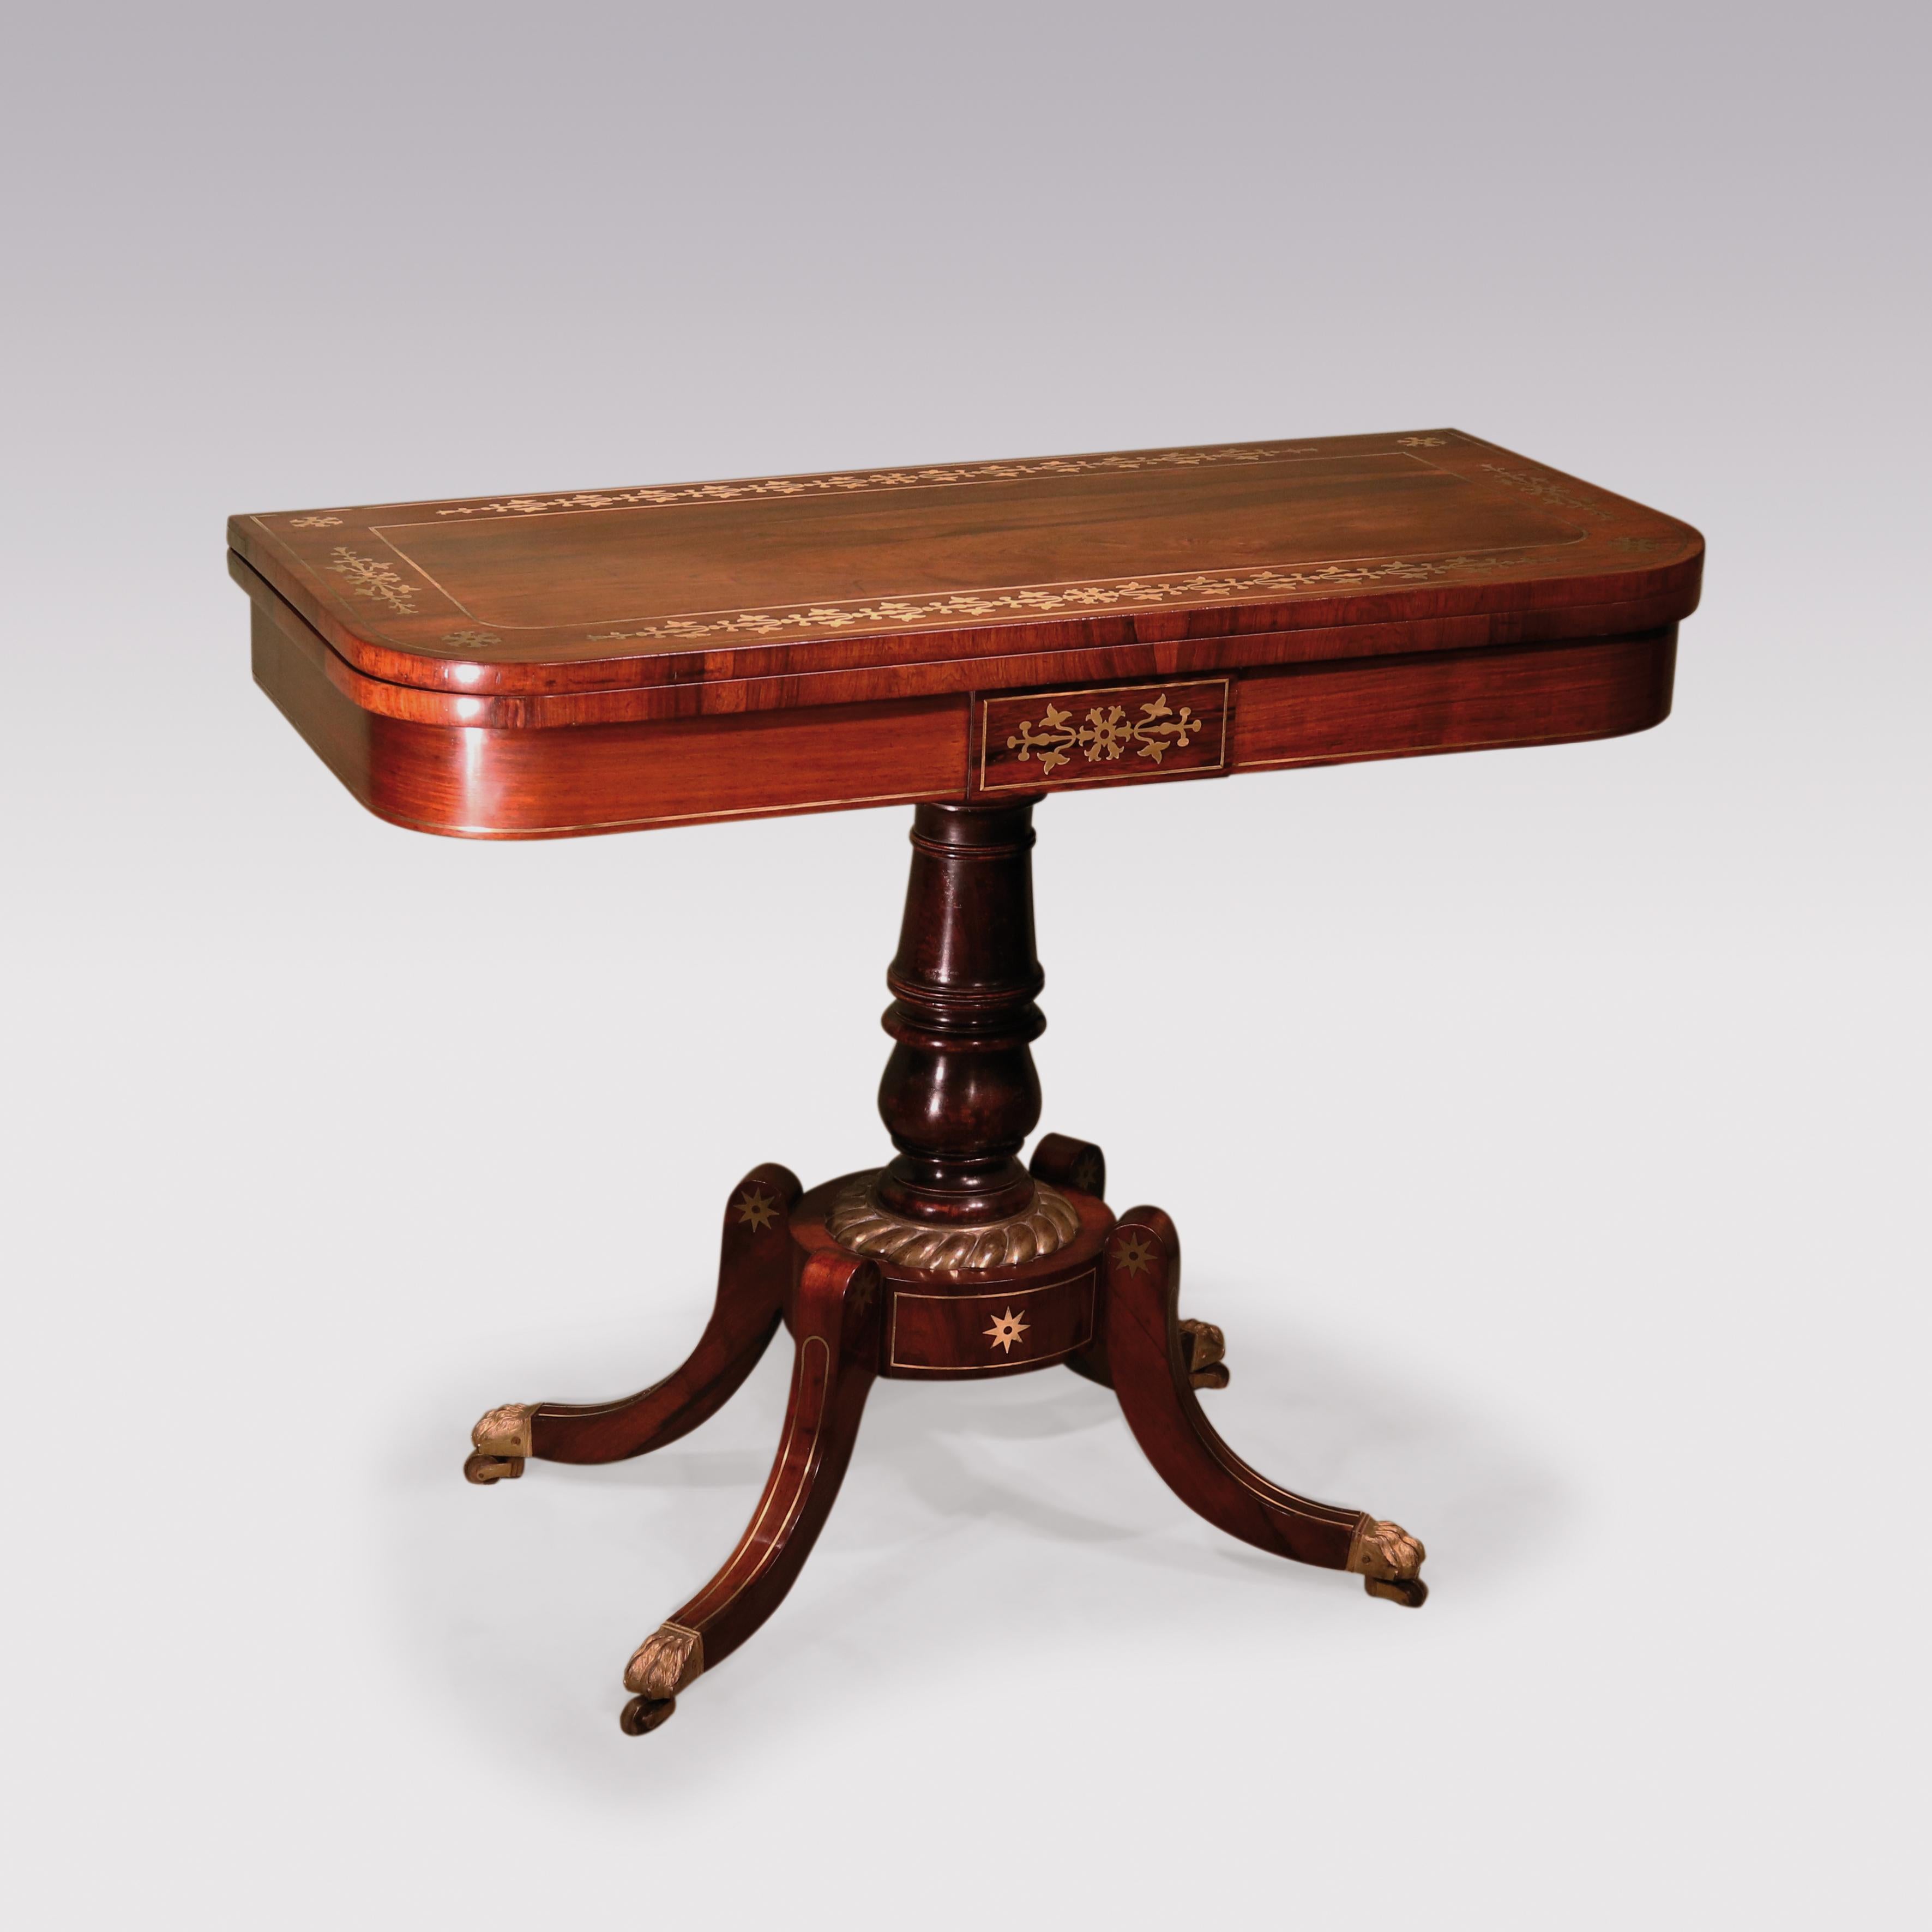 Une belle paire de tables à cartes en bois de rose figuré de la période Regency du 19e siècle. Les plateaux rectangulaires arrondis sont ornés de bandes transversales et incrustés de motifs décoratifs en laiton. Elle est surmontée d'une frise